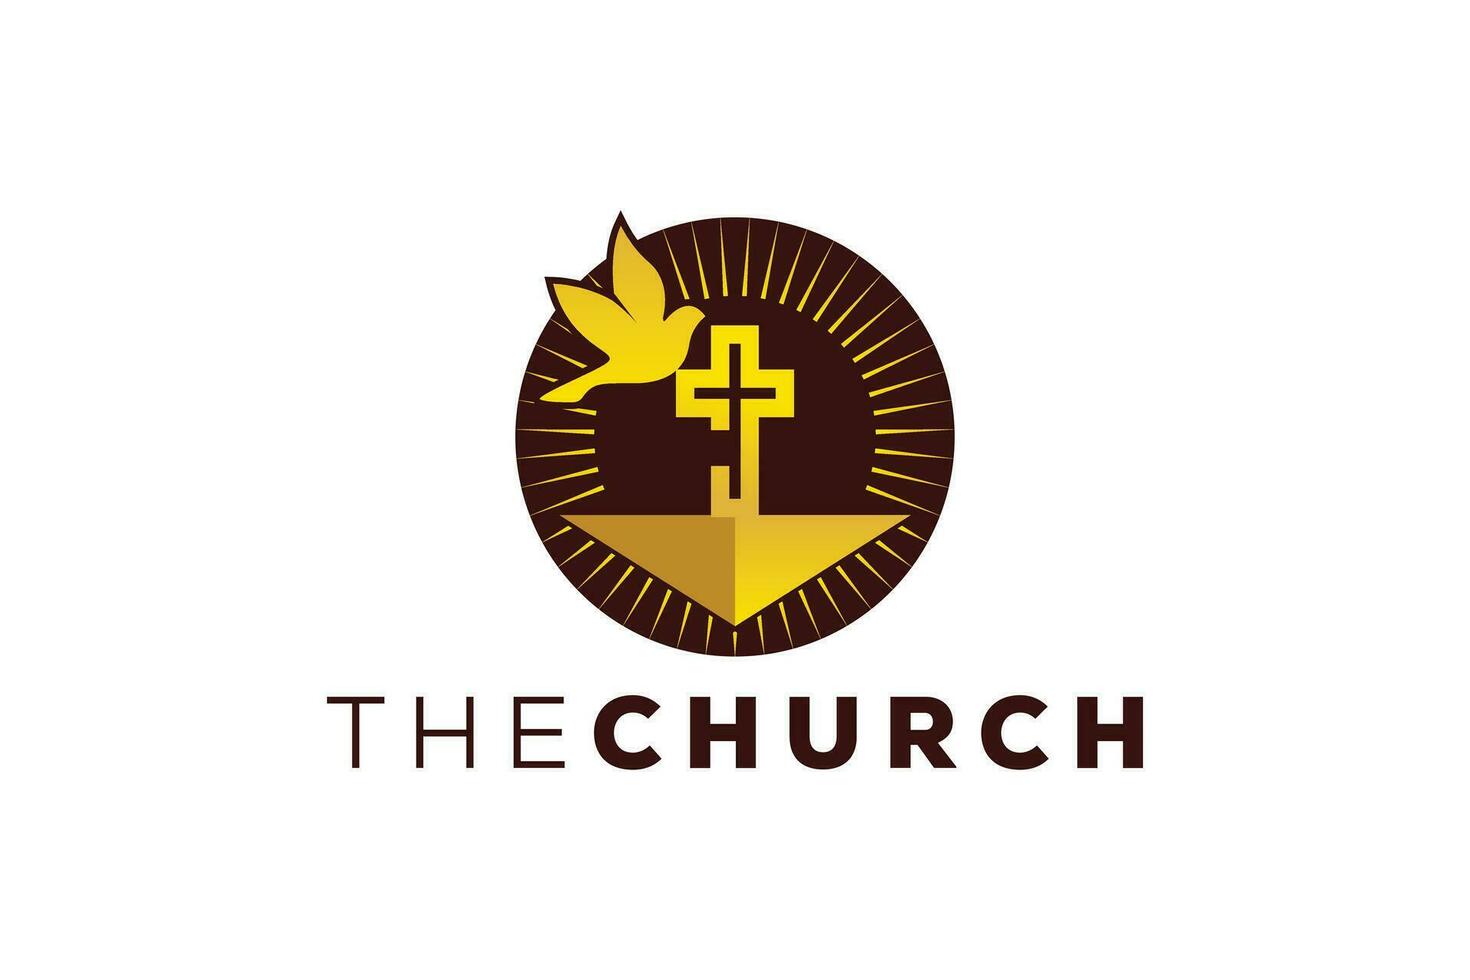 de moda y profesional letra j Iglesia firmar cristiano y pacífico vector logo